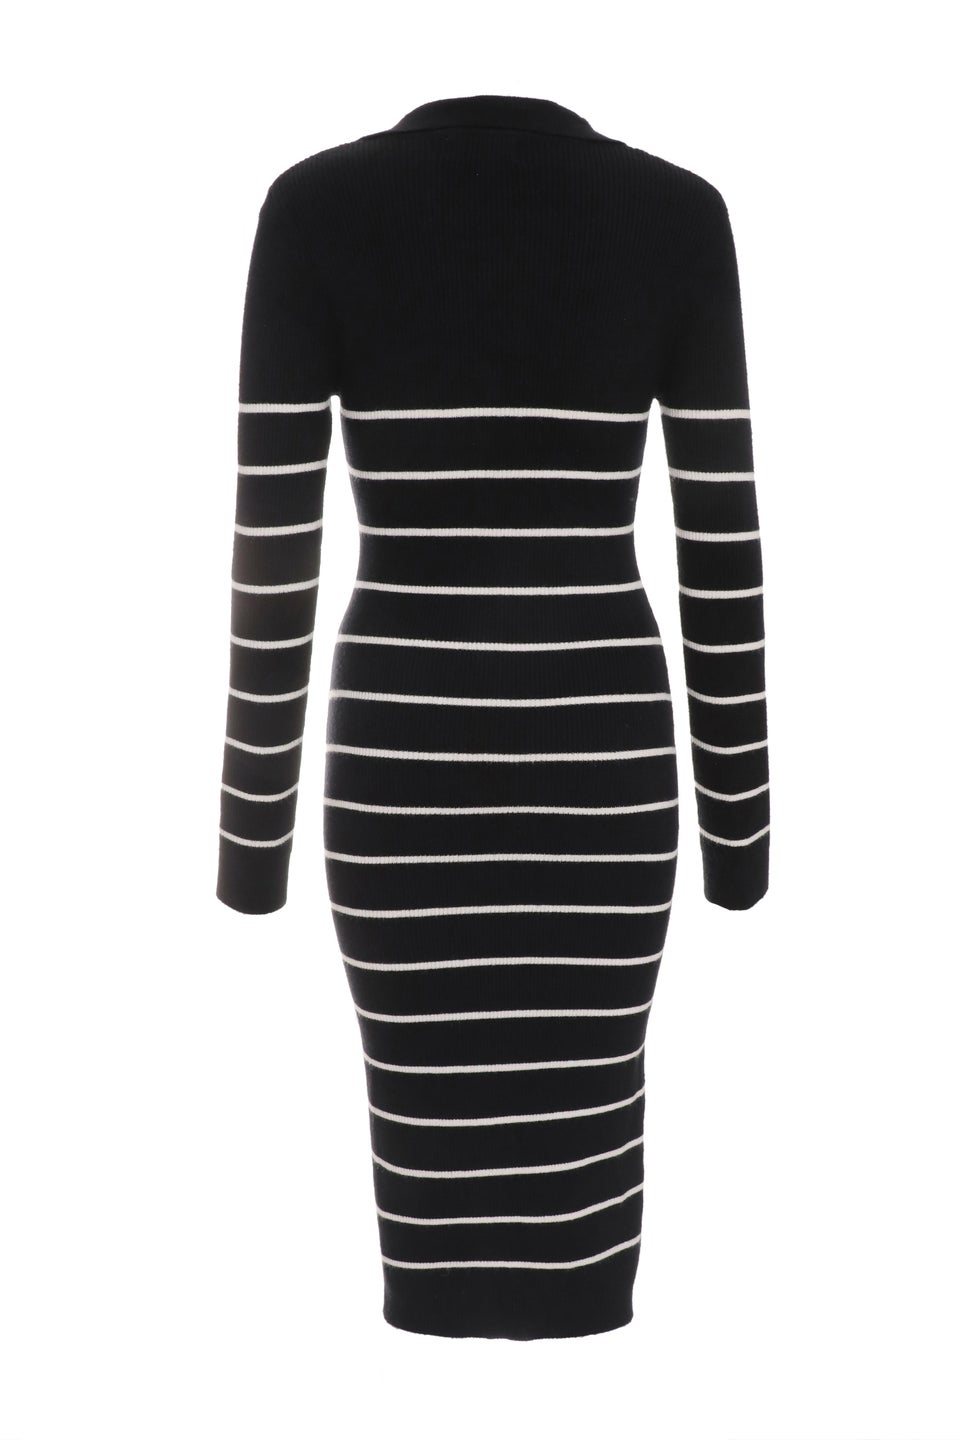 Quiz Black Stripe Knitted Midi Dress - Matalan